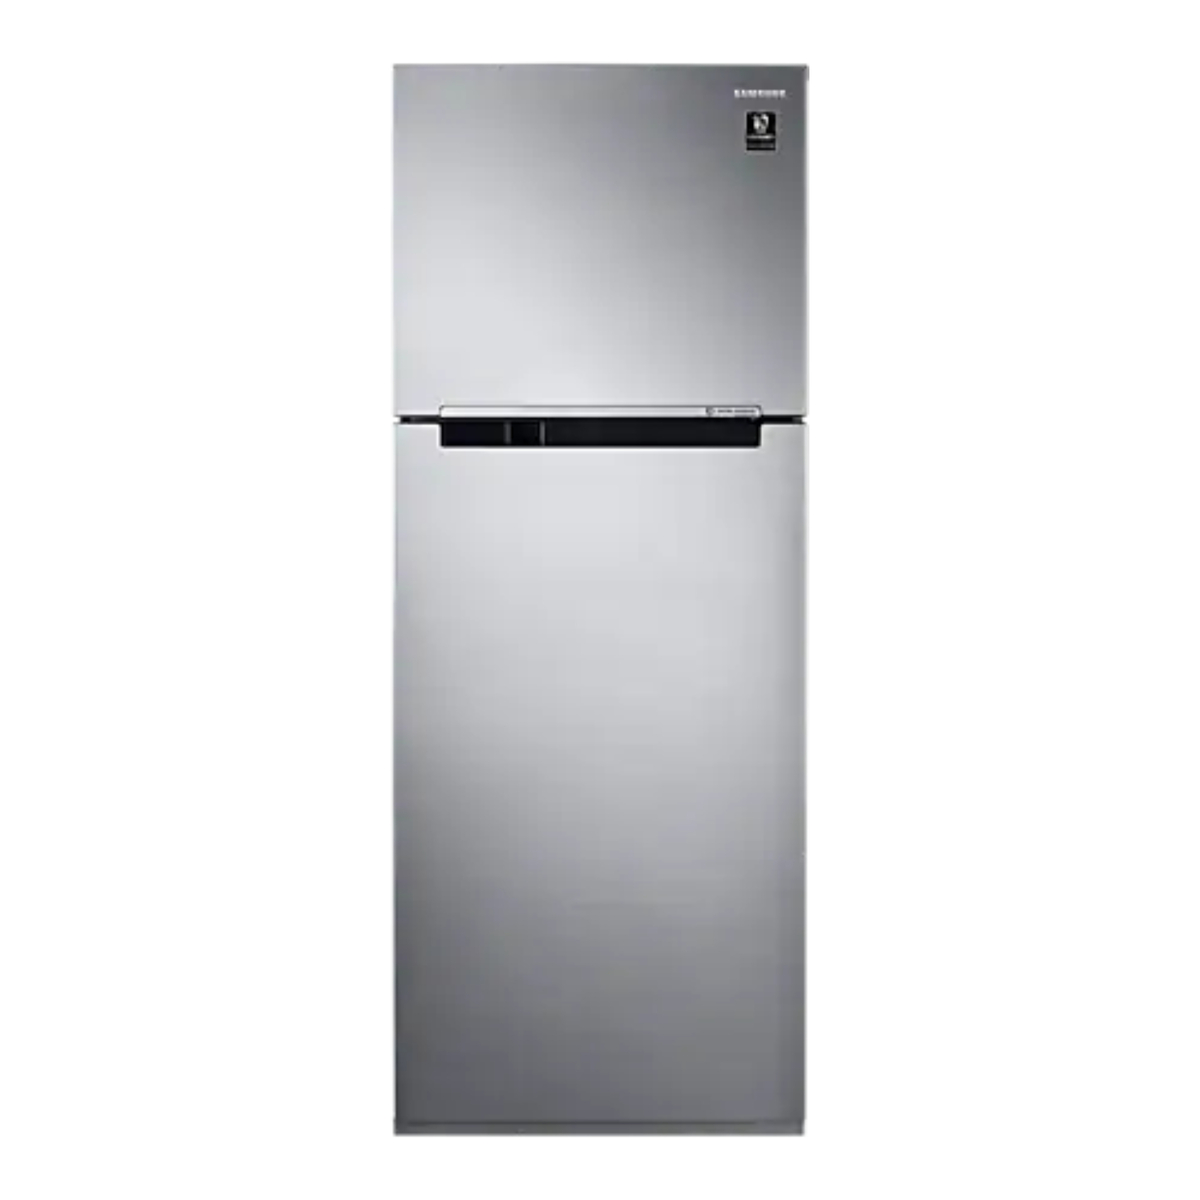 Samsung Refrigerator 2 Doors RT38K503JS8/SE